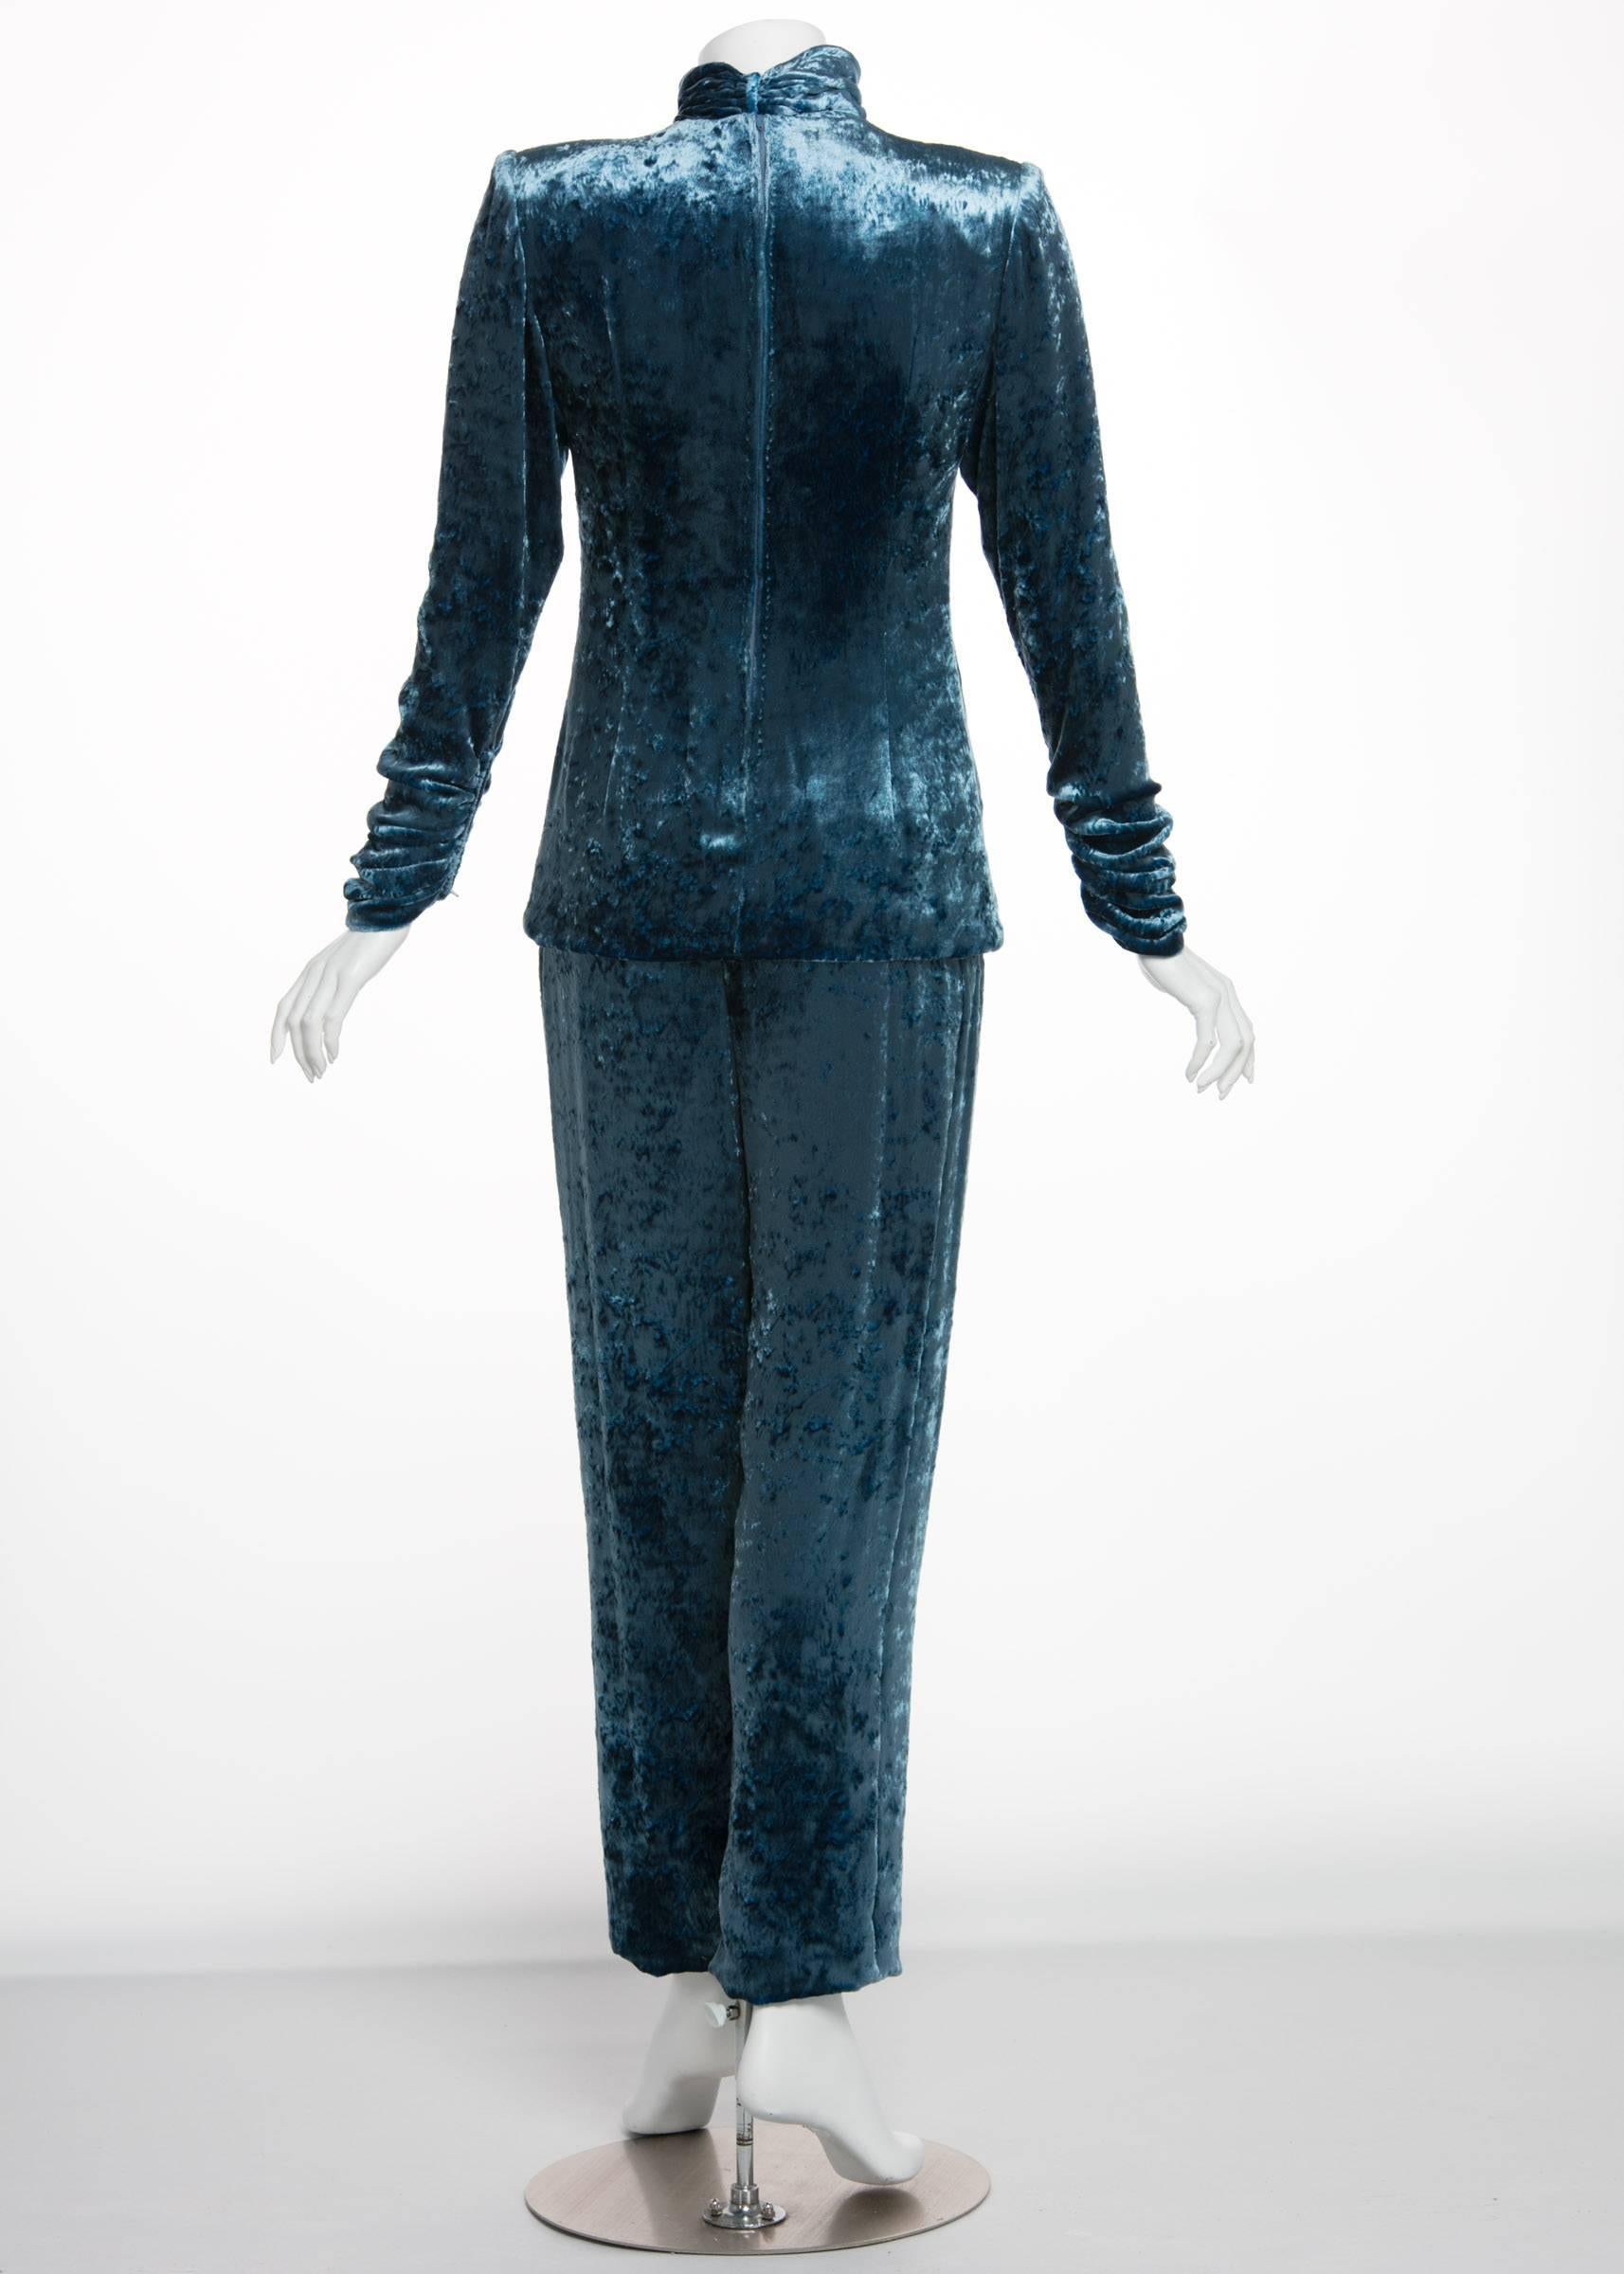 Galanos Couture Blue Velvet Evening Tunic Top Pants Suit, 1980s  1